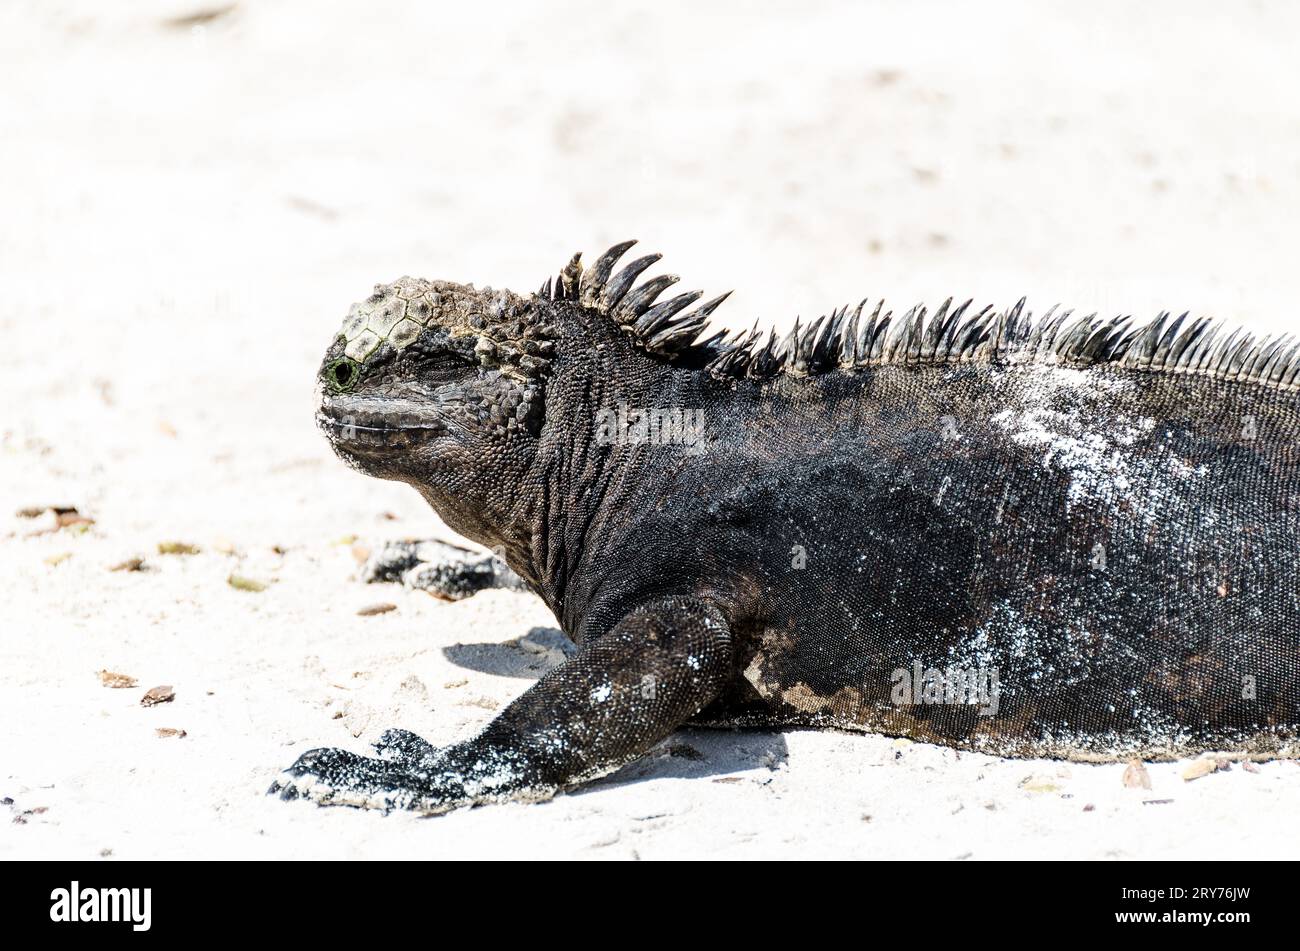 marine iguana of galapagos island Stock Photo